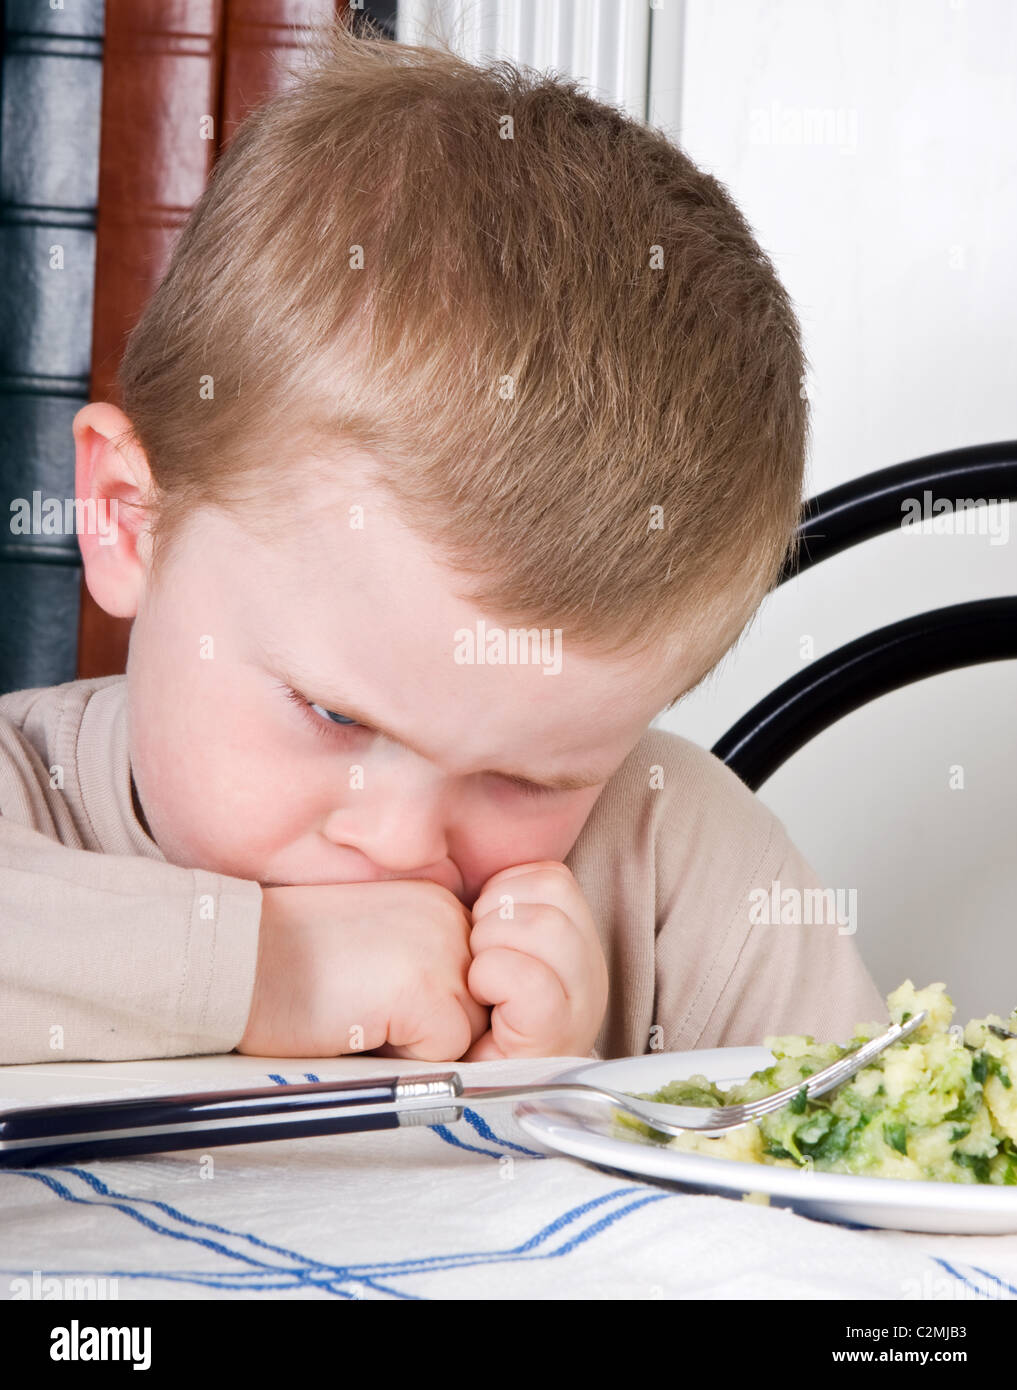 Vier Jahre alter Junge Abneigung das Essen auf seinem Teller Stockfoto